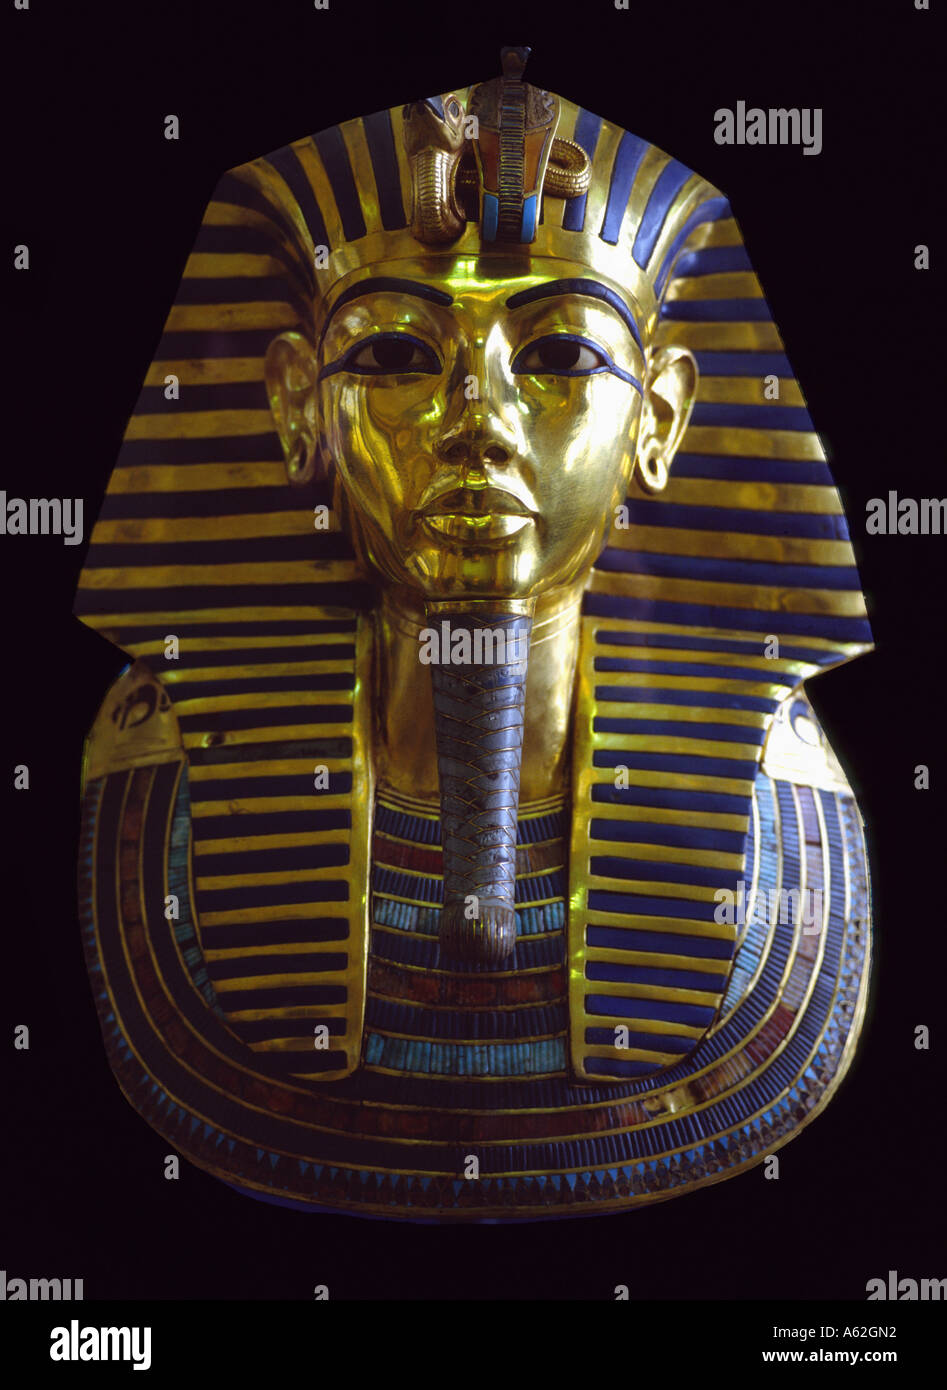 Death mask of Tutankhamun against black background, Egypt Stock Photo